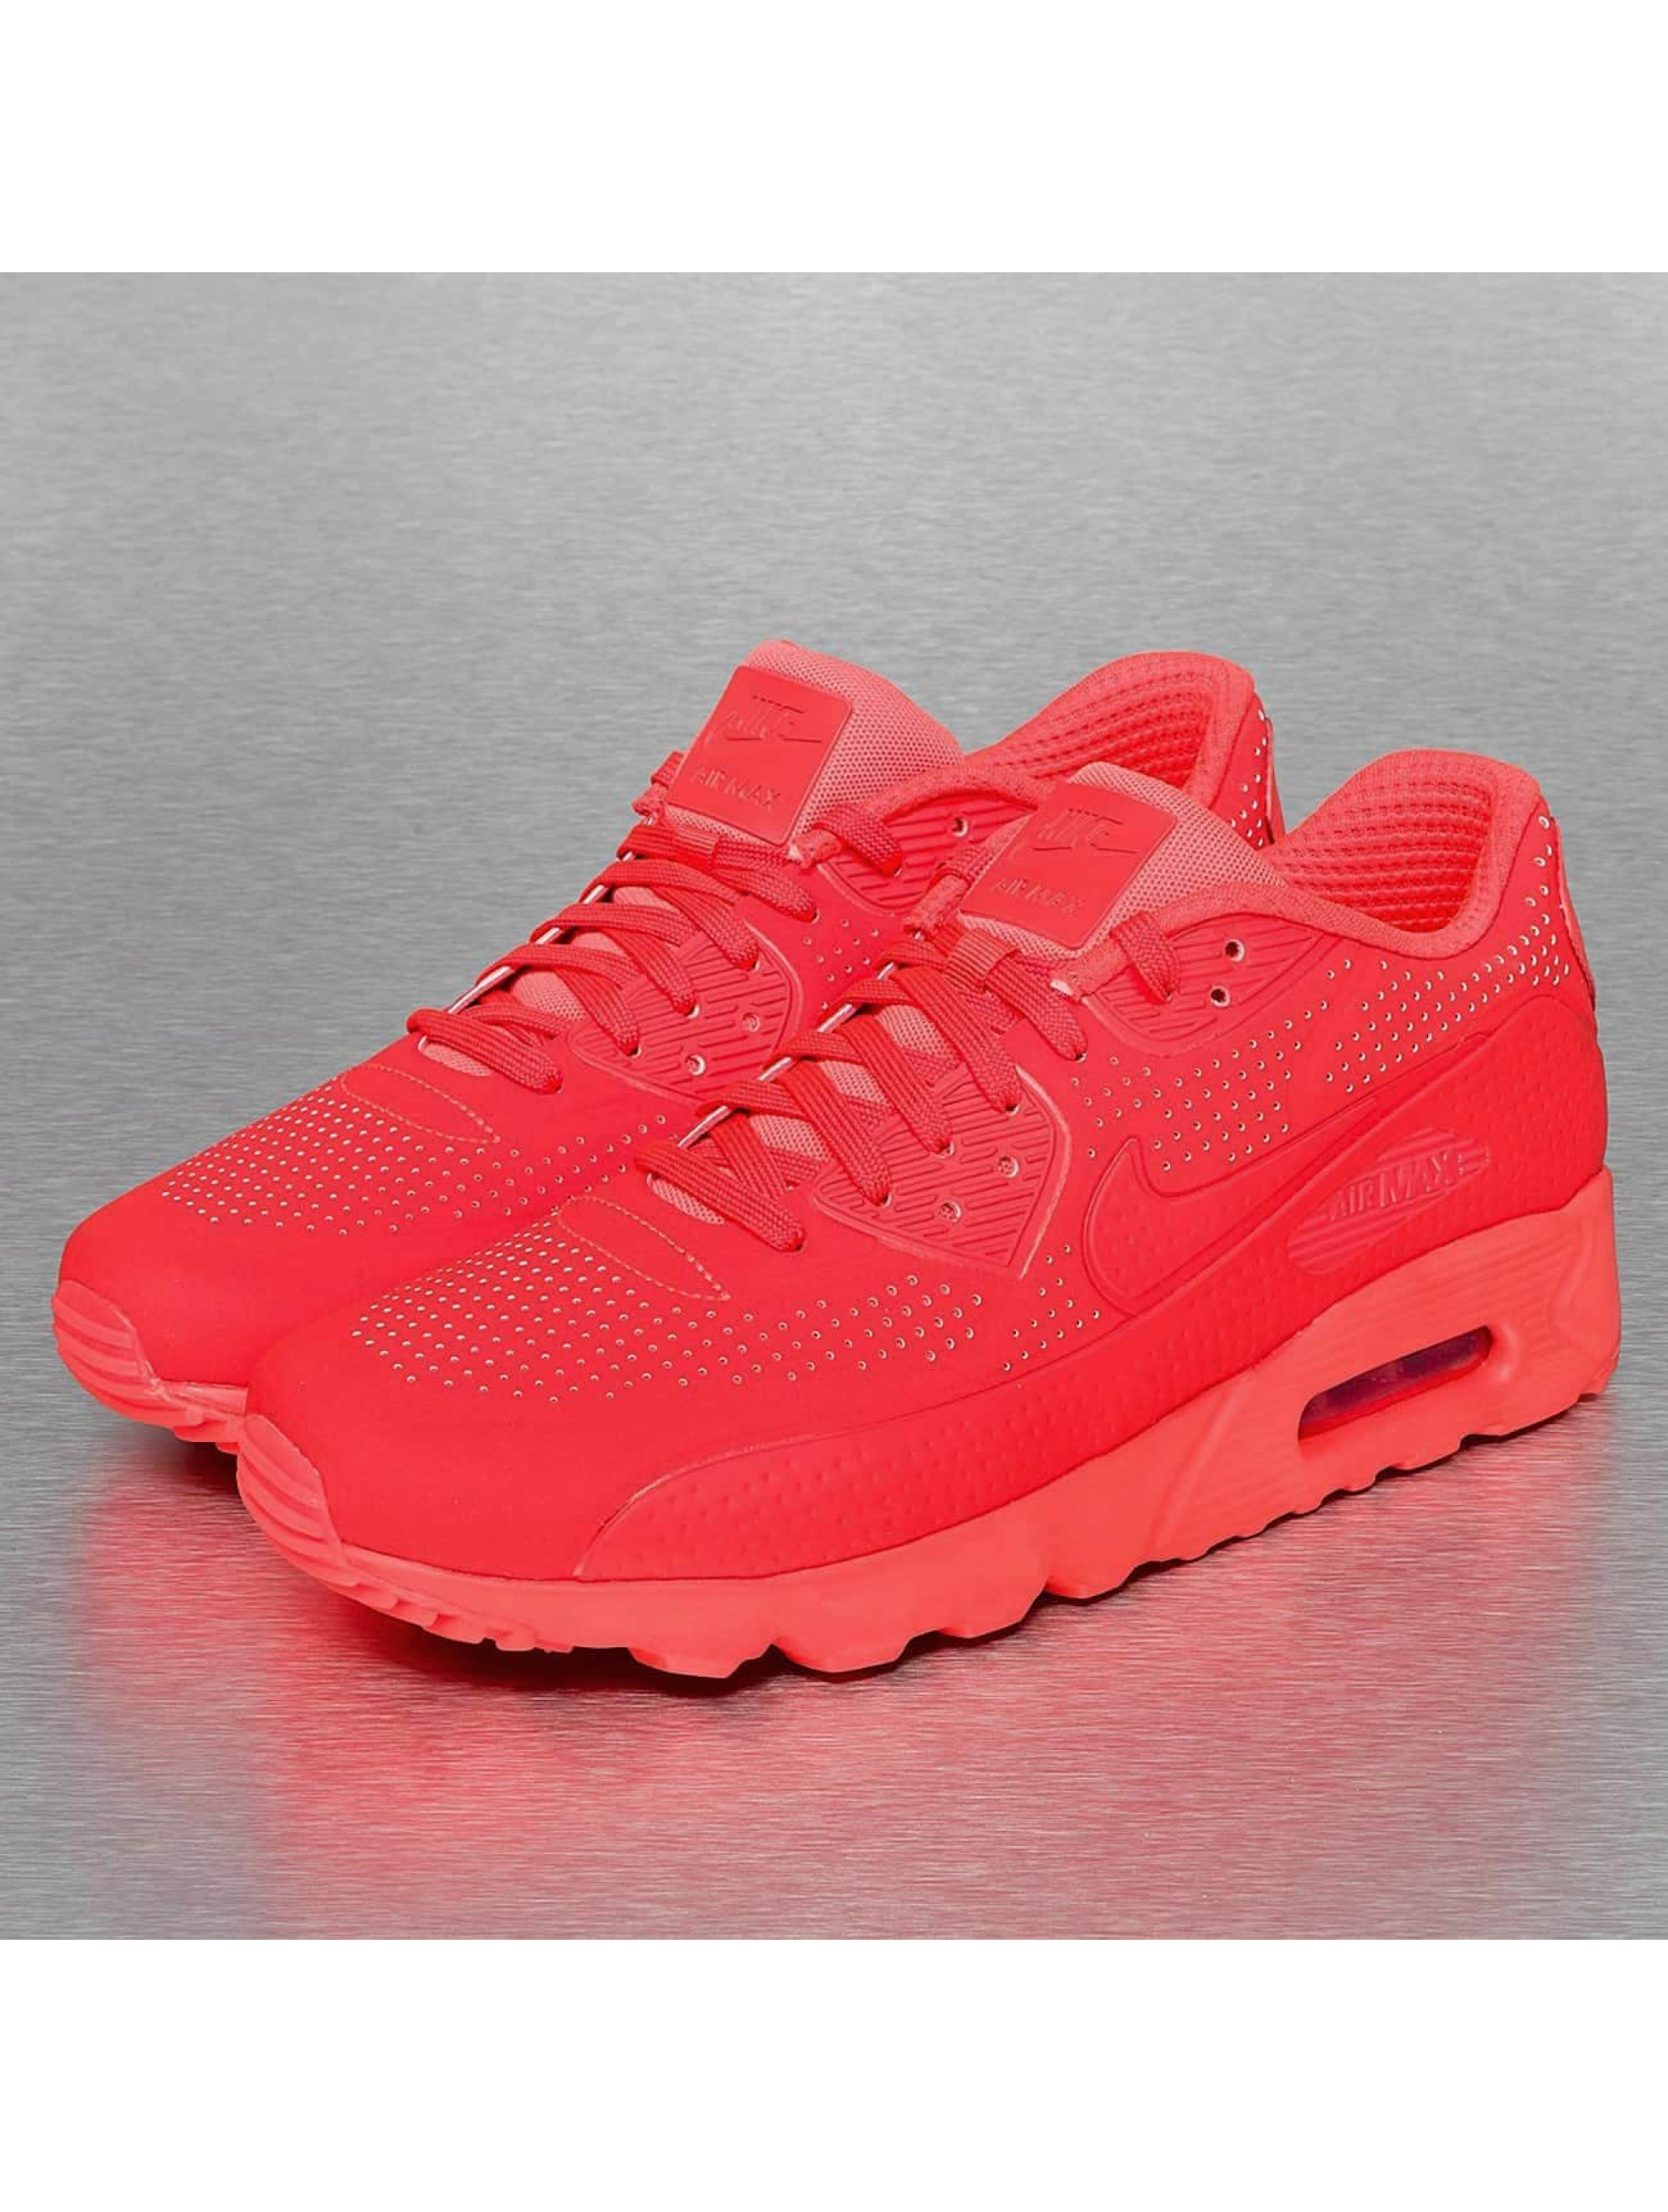 Nike schoen / sneaker Air Max 90 Ultra Moire in rood